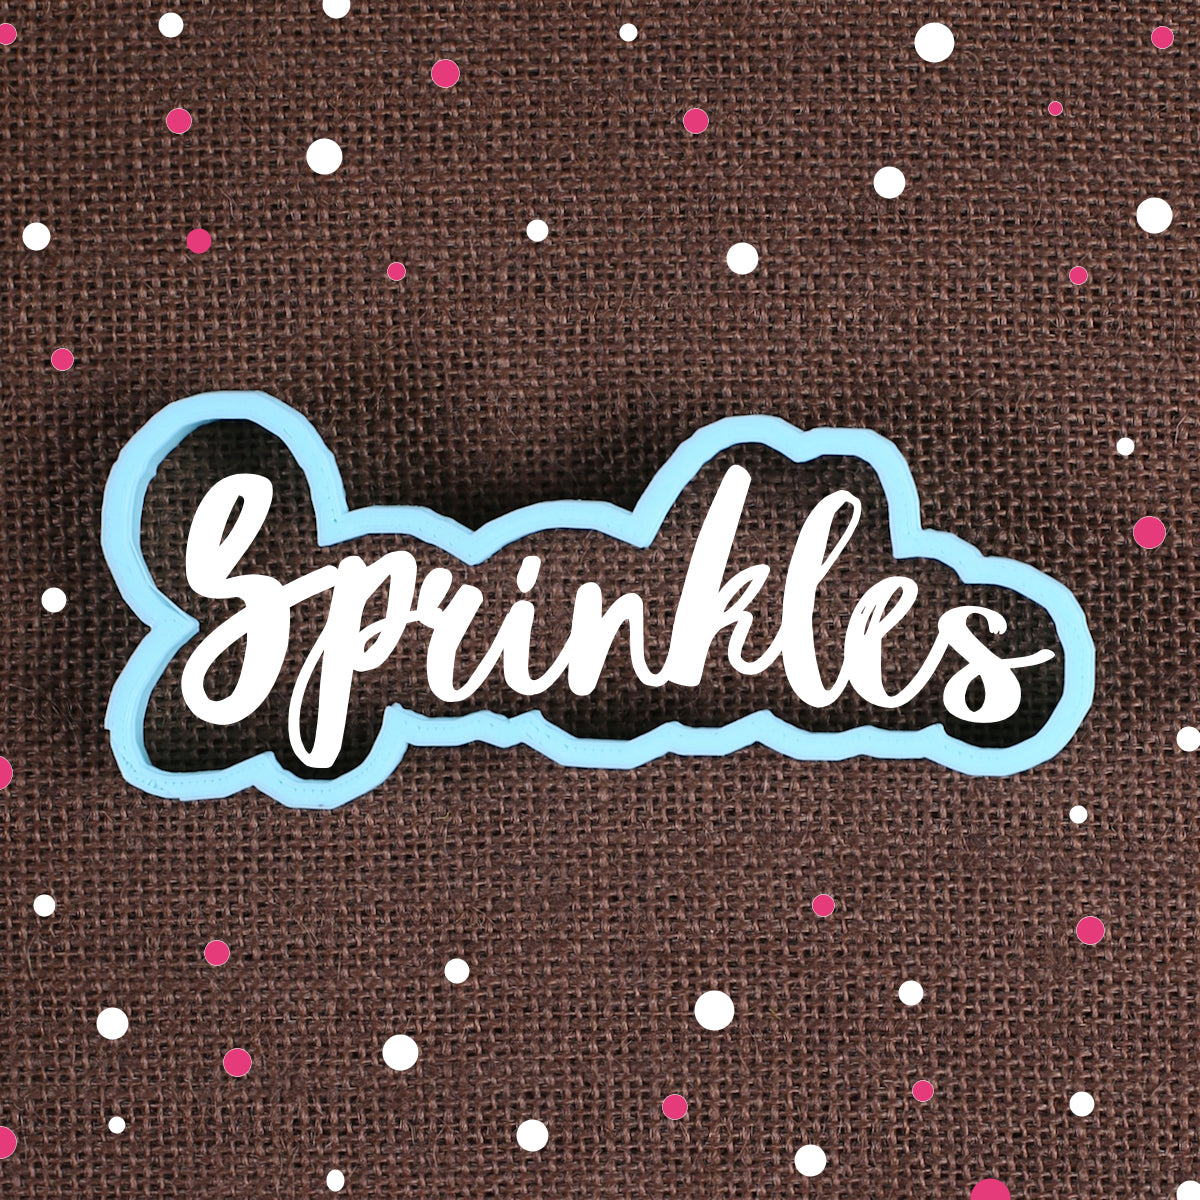 Designer Sprinkles Cookie Cutter | www.sprinklebeesweet.com